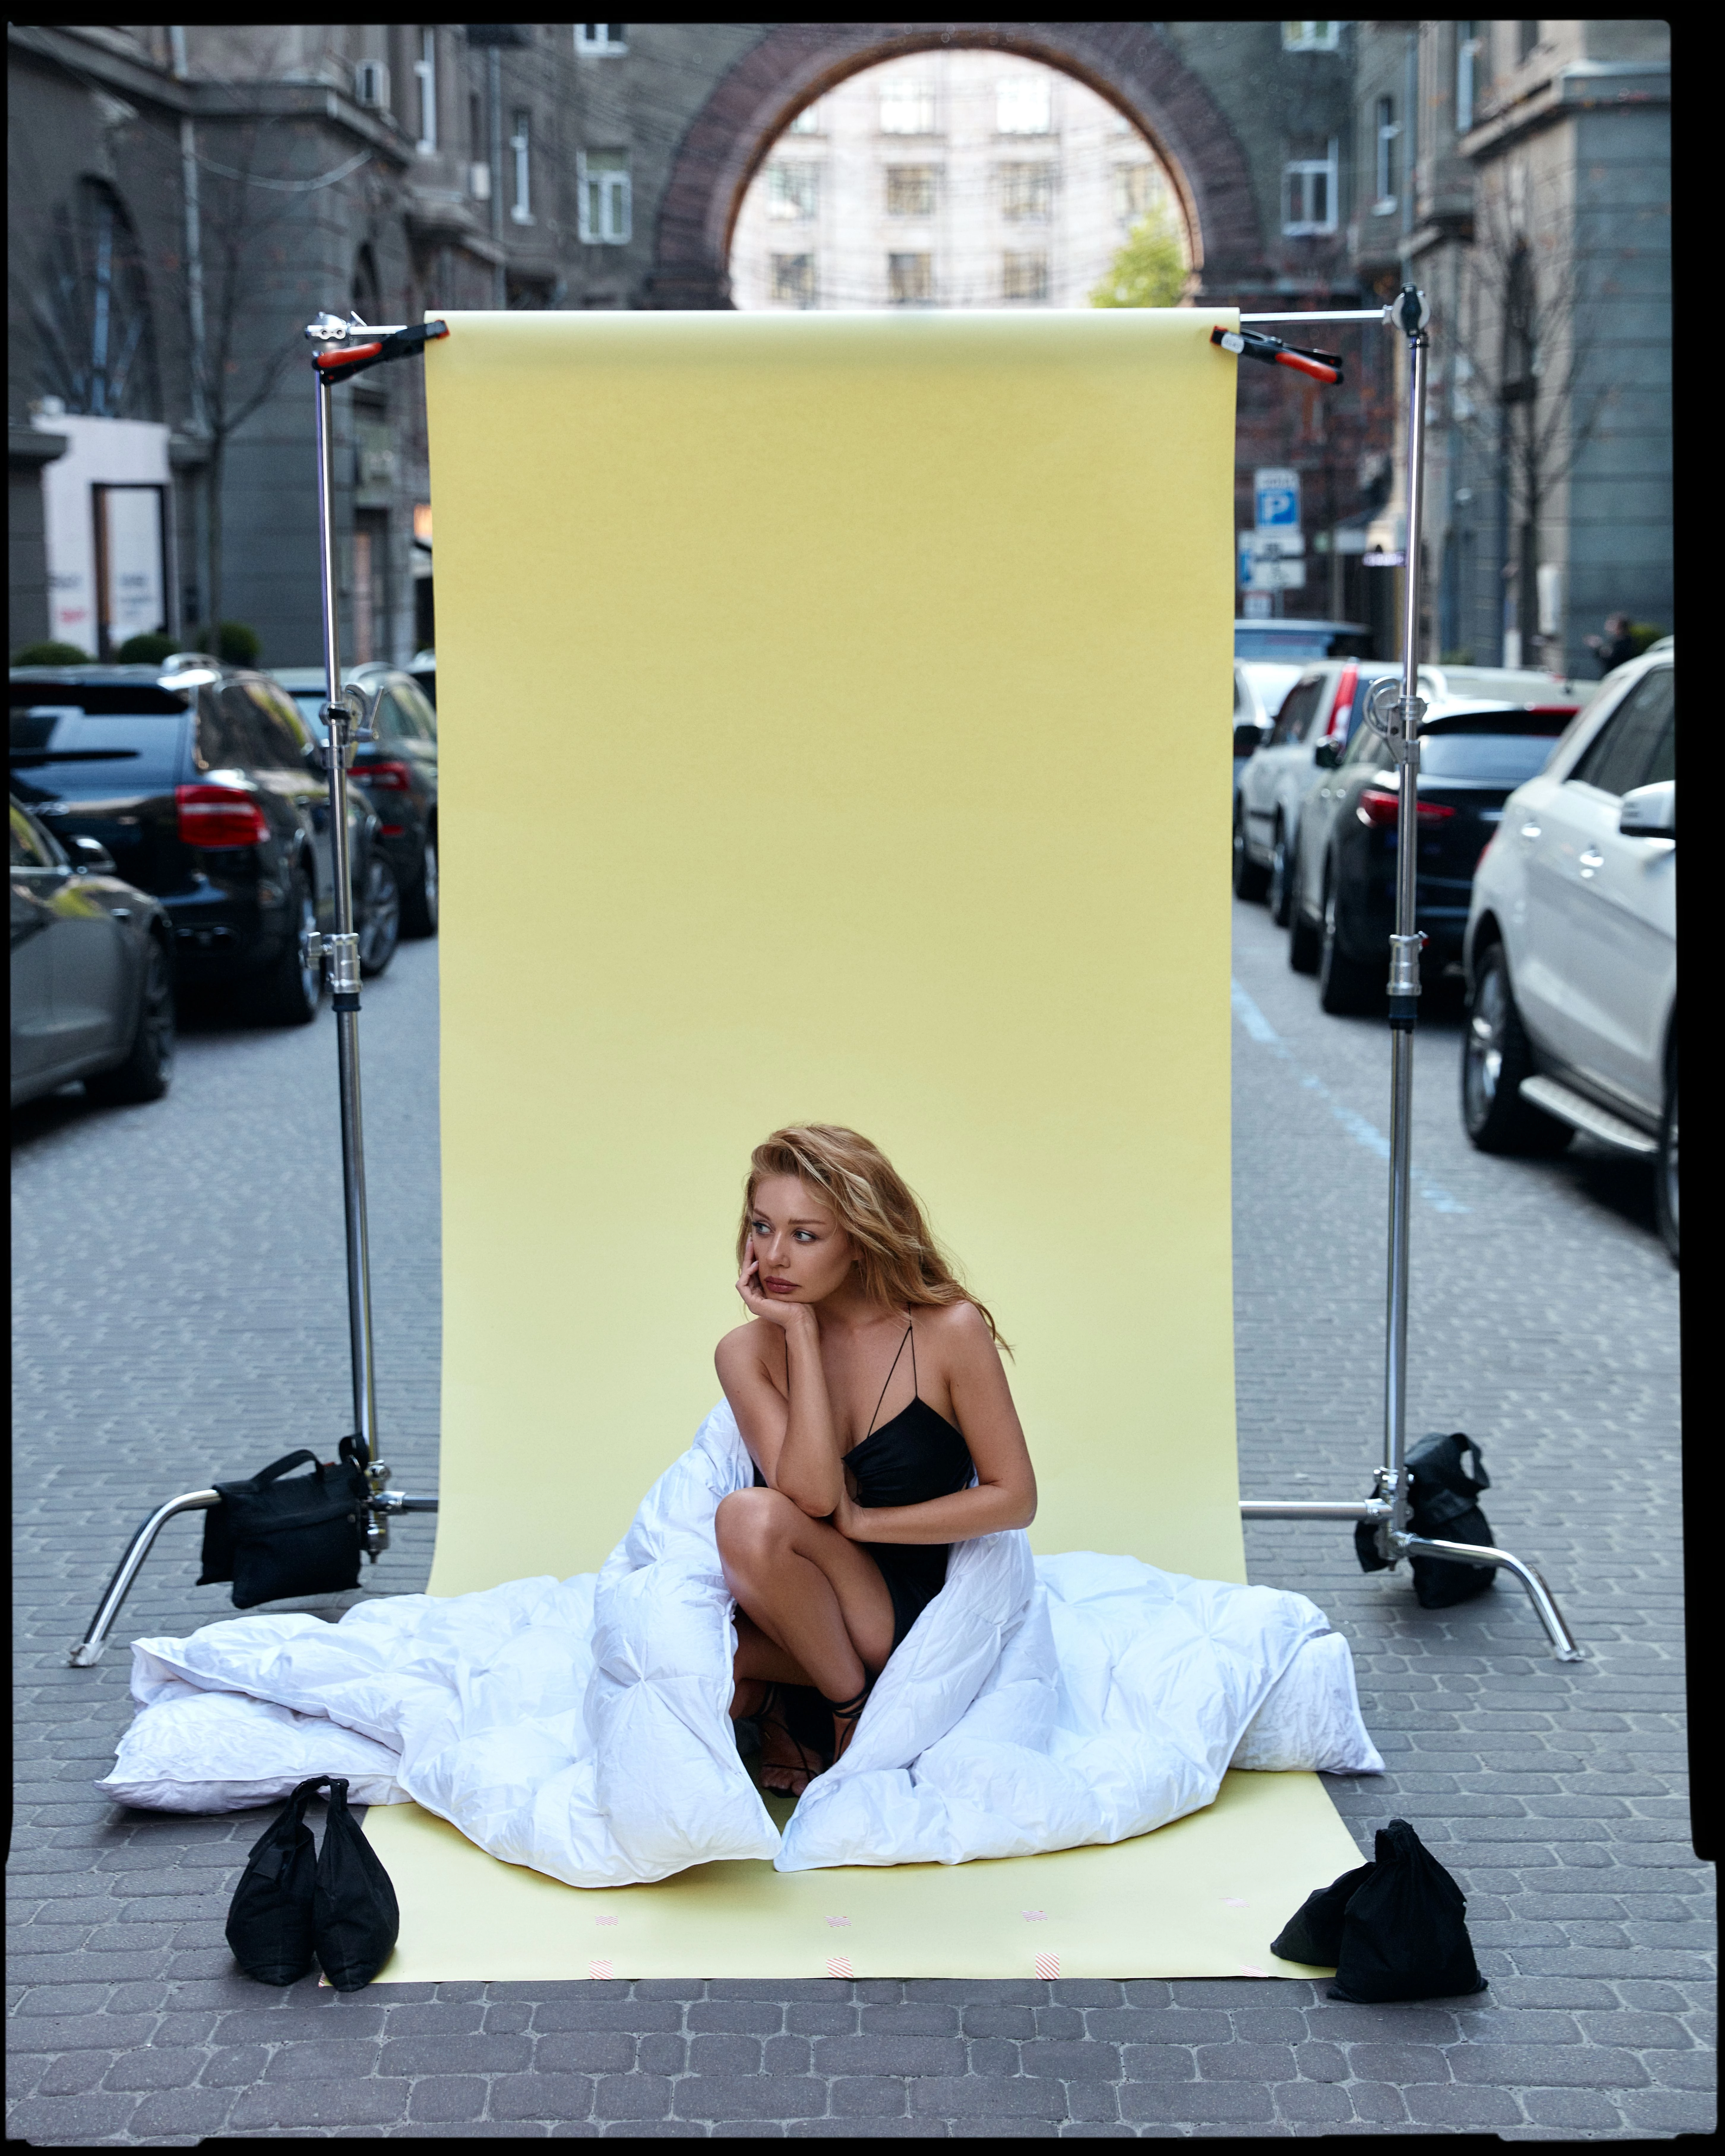 Vogue UA ексклюзивно публікує знімання Тіни Кароль, яке було зроблено  в знакових місцях Києва на честь виходу кліпа